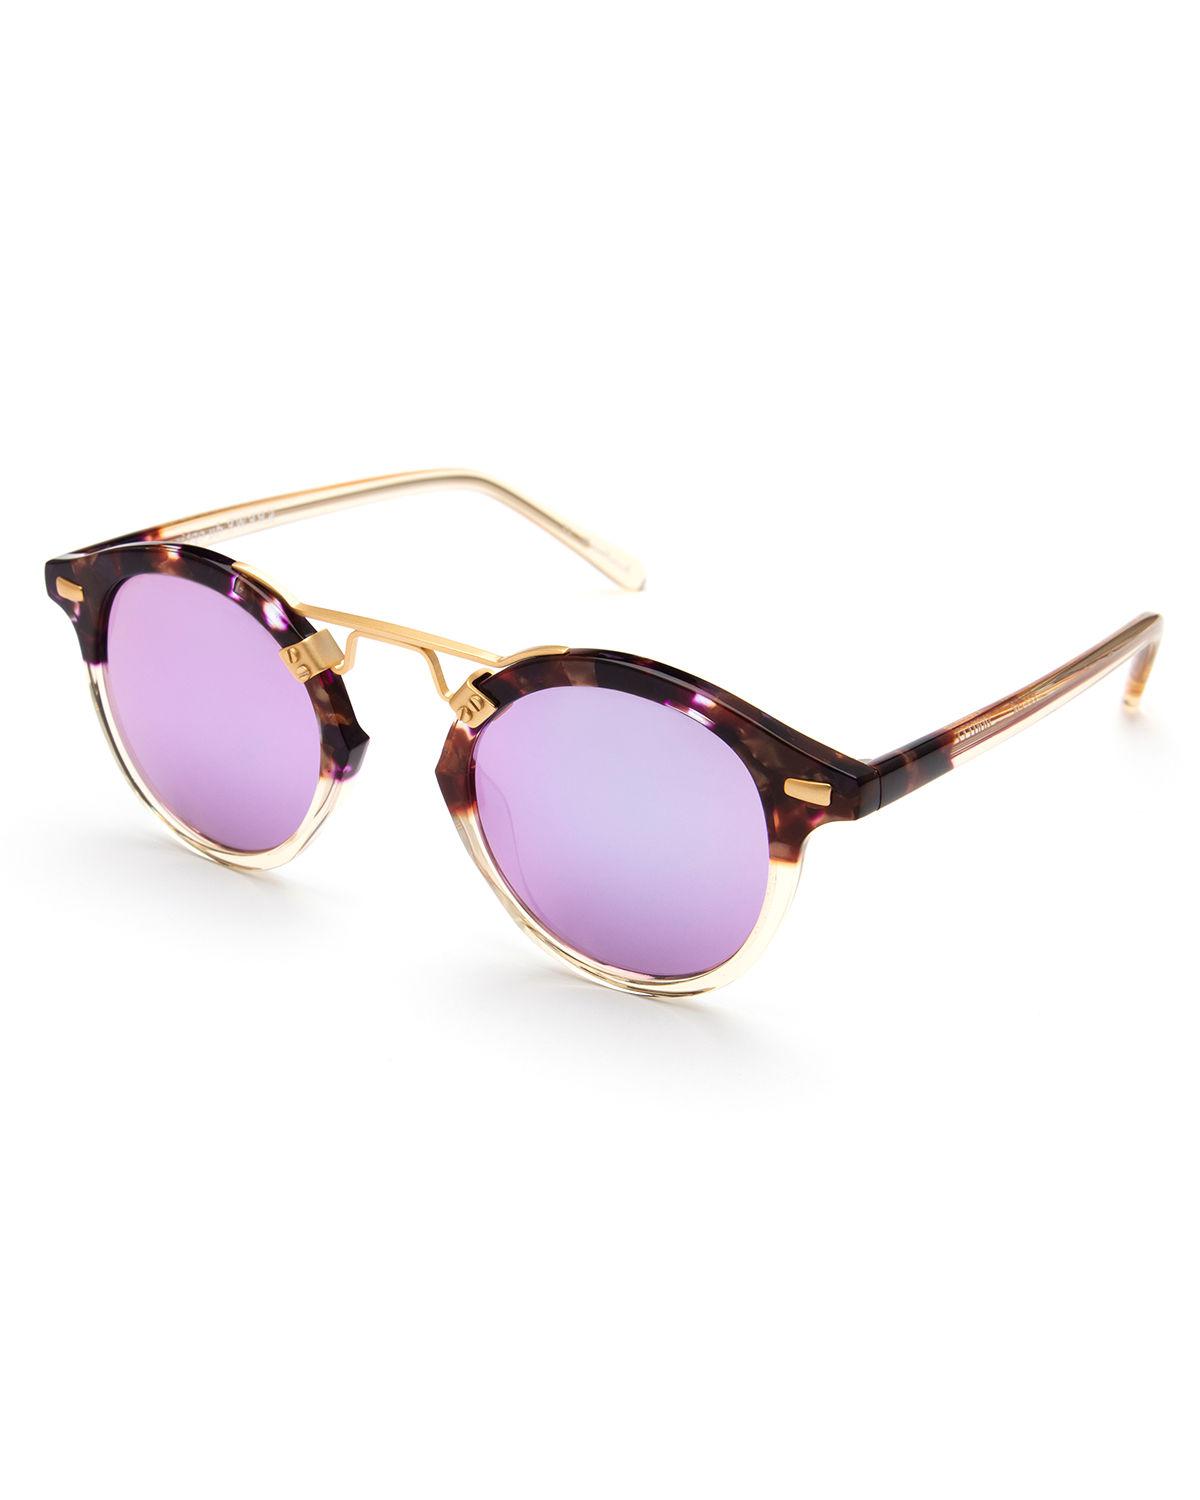 Lyst - Krewe St. Louis Round Mirrored Sunglasses